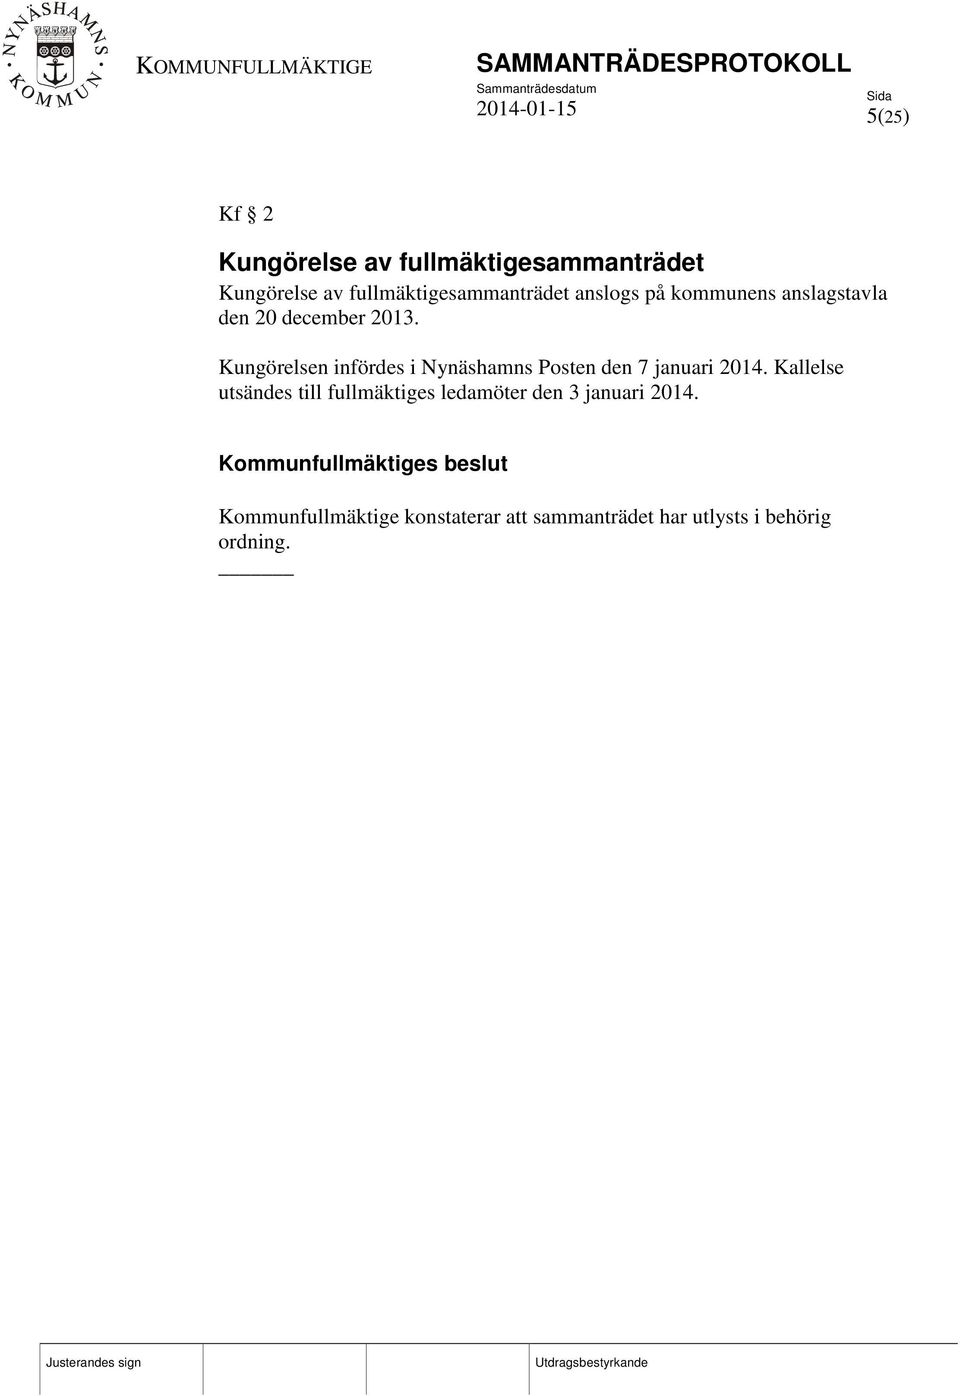 Kungörelsen infördes i Nynäshamns Posten den 7 januari 2014.